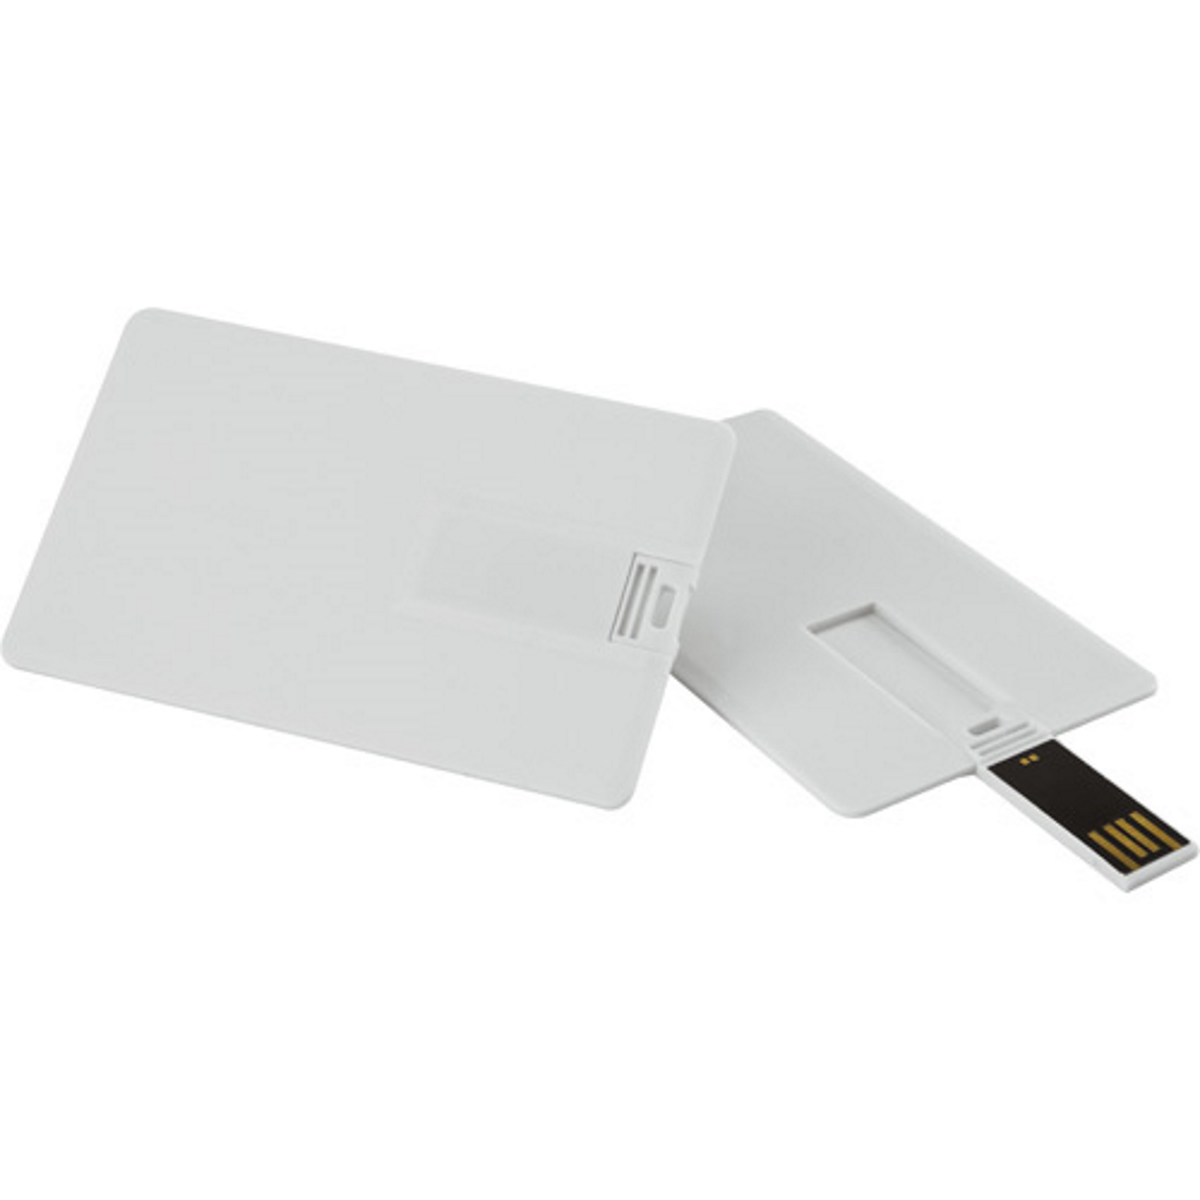 USB GERMANY ® Kreditkarte GB) (Weiss, 8 USB-Stick